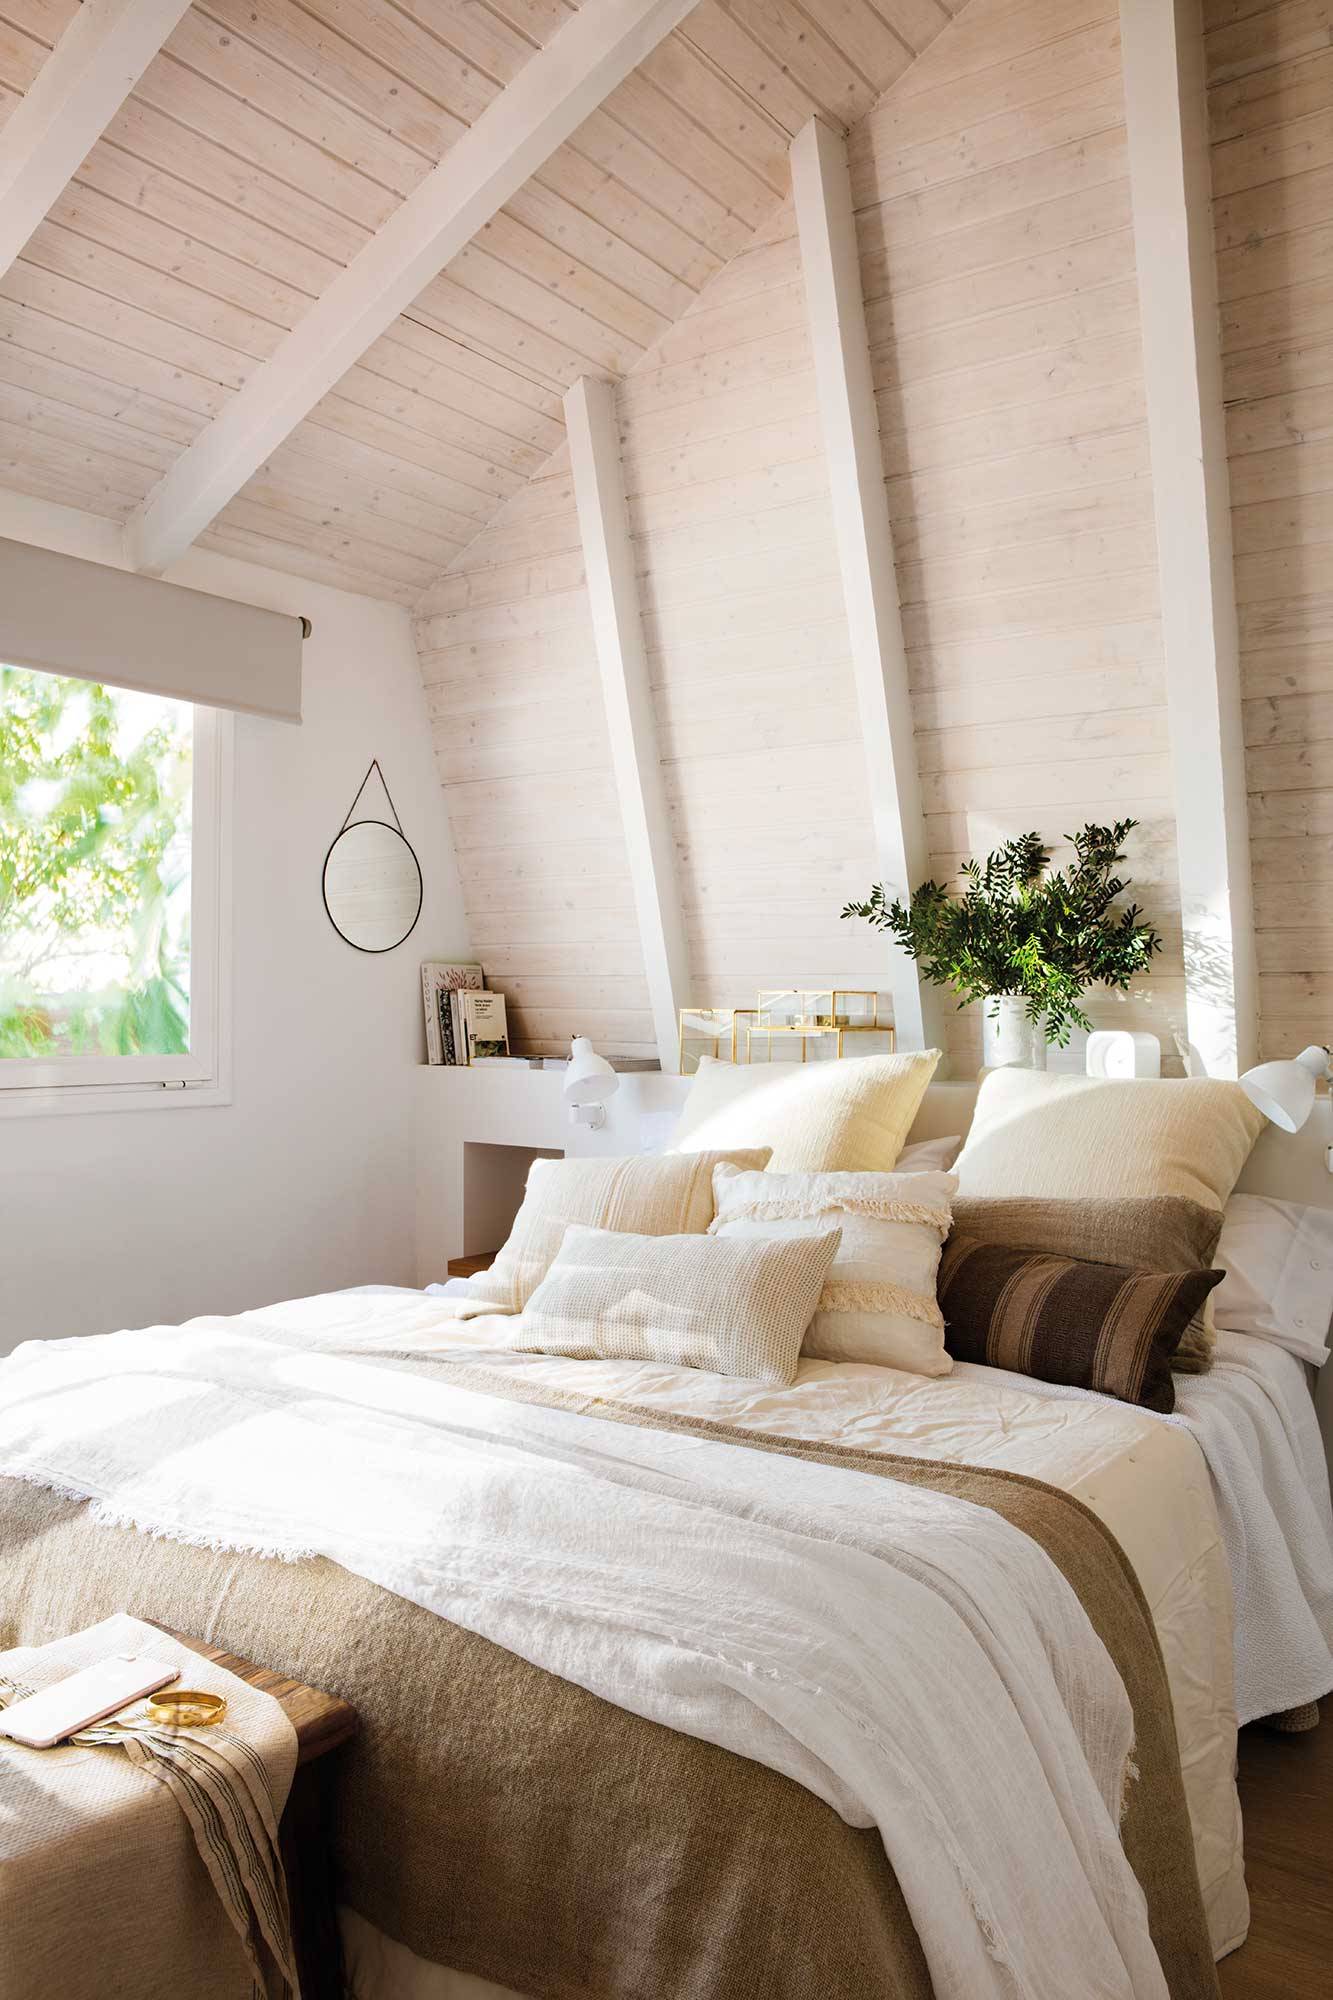 Dormitorio rústico con vigas vistas y ropa de cama de lino en tonos blancos y neutros 00513317